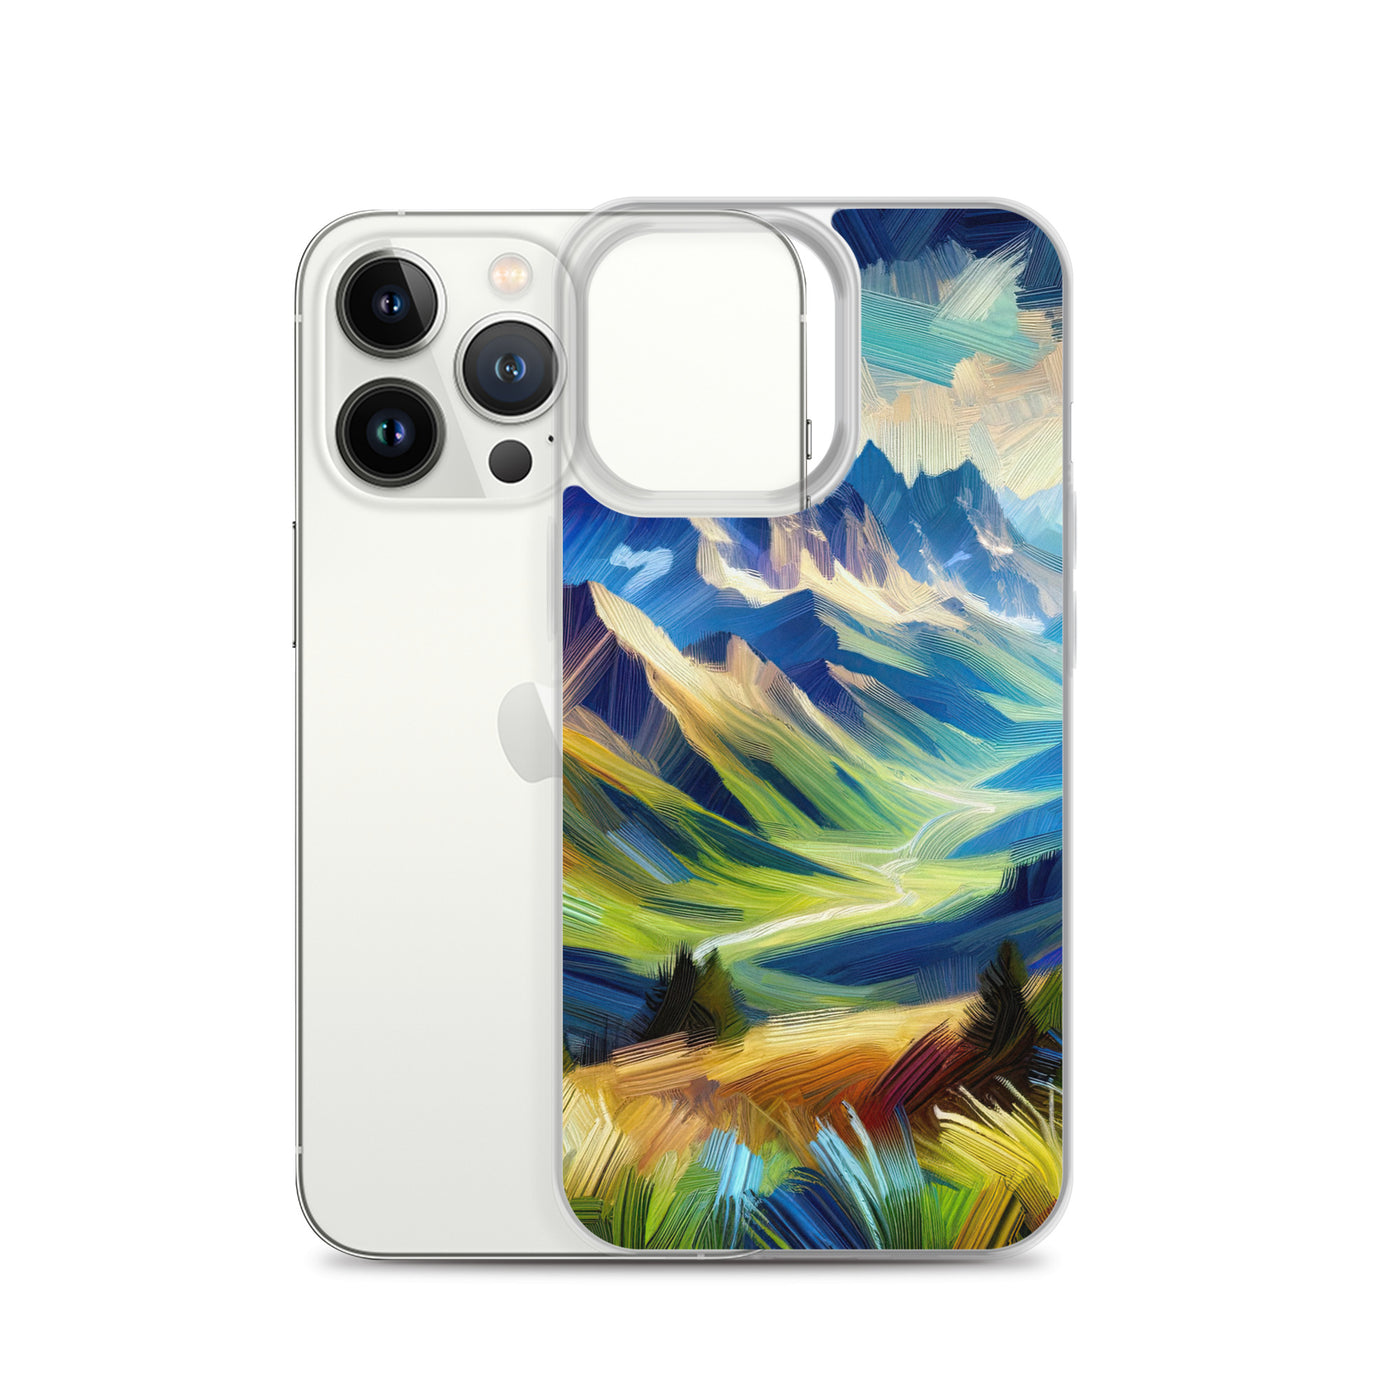 Impressionistische Alpen, lebendige Farbtupfer und Lichteffekte - iPhone Schutzhülle (durchsichtig) berge xxx yyy zzz